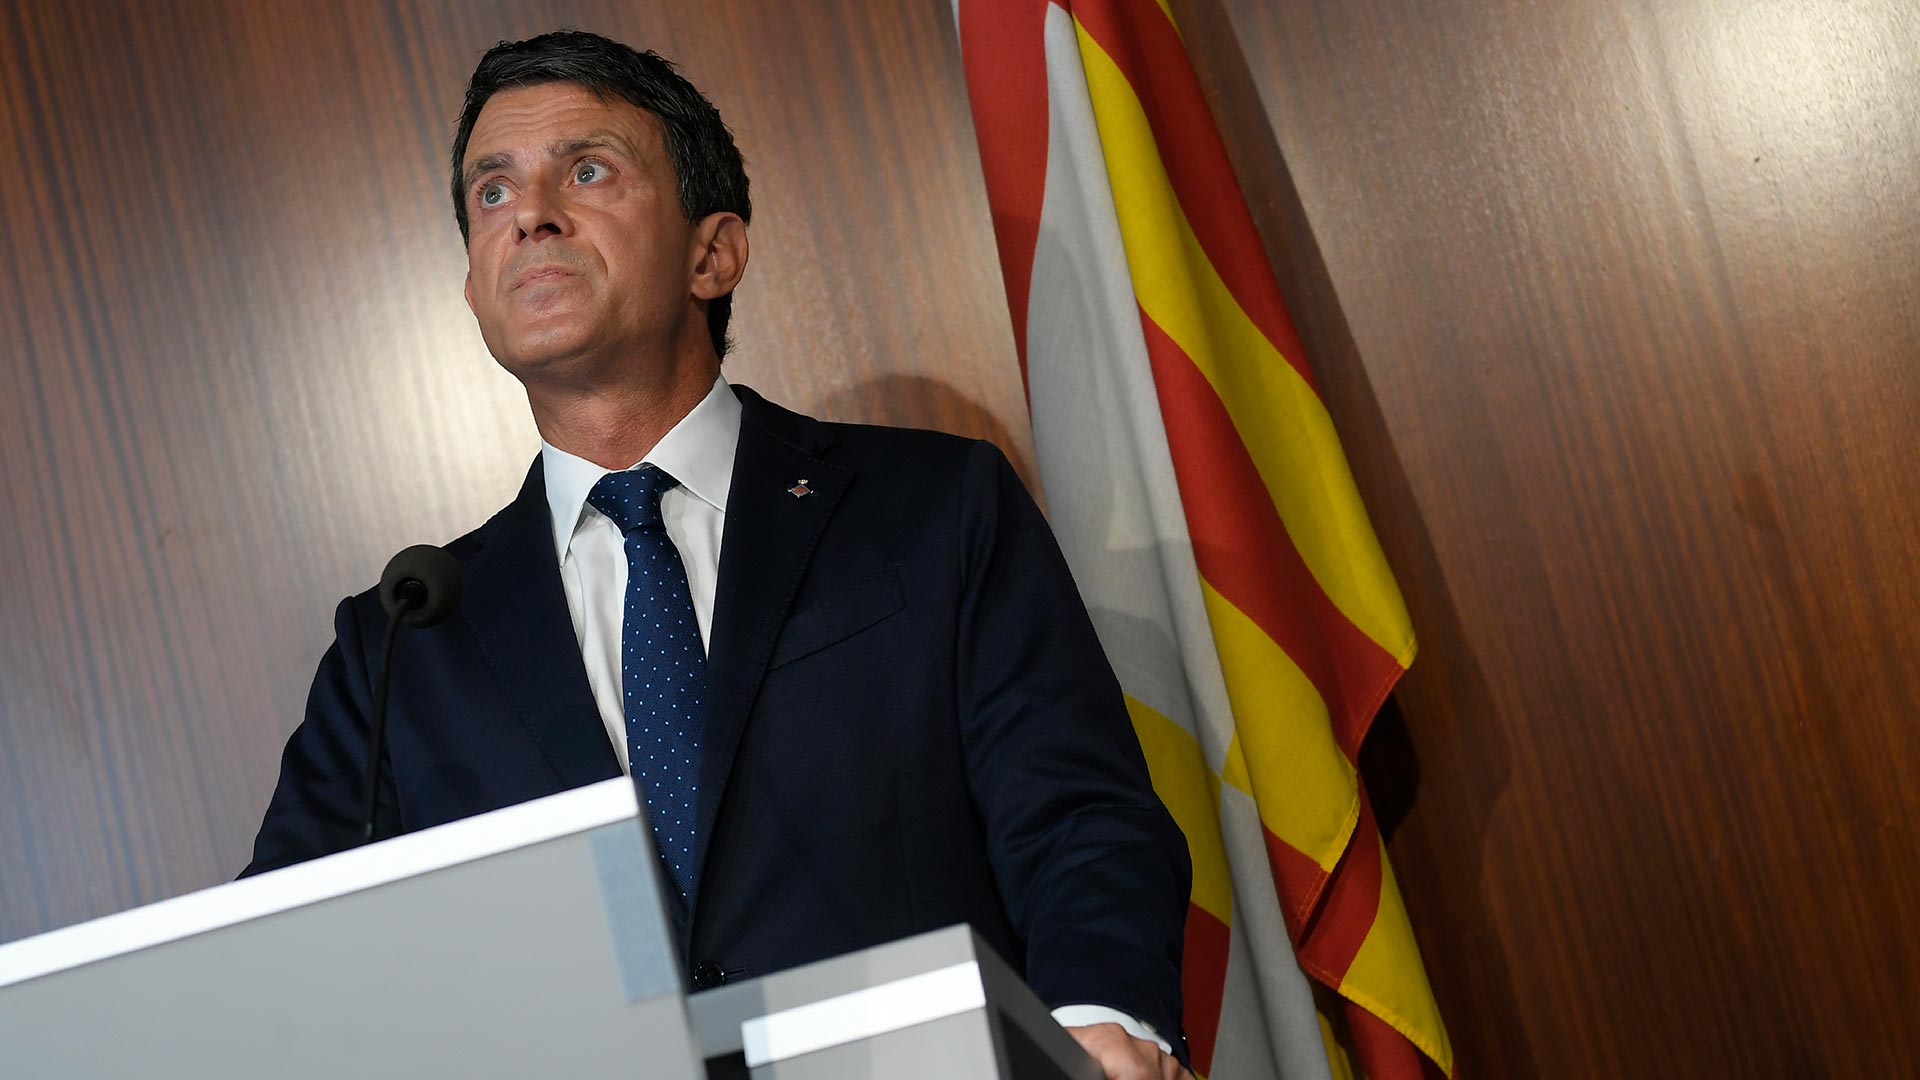 Manuel Valls, tras la ruptura con Ciudadanos: "Ya no es un partido liberal ni progresista"